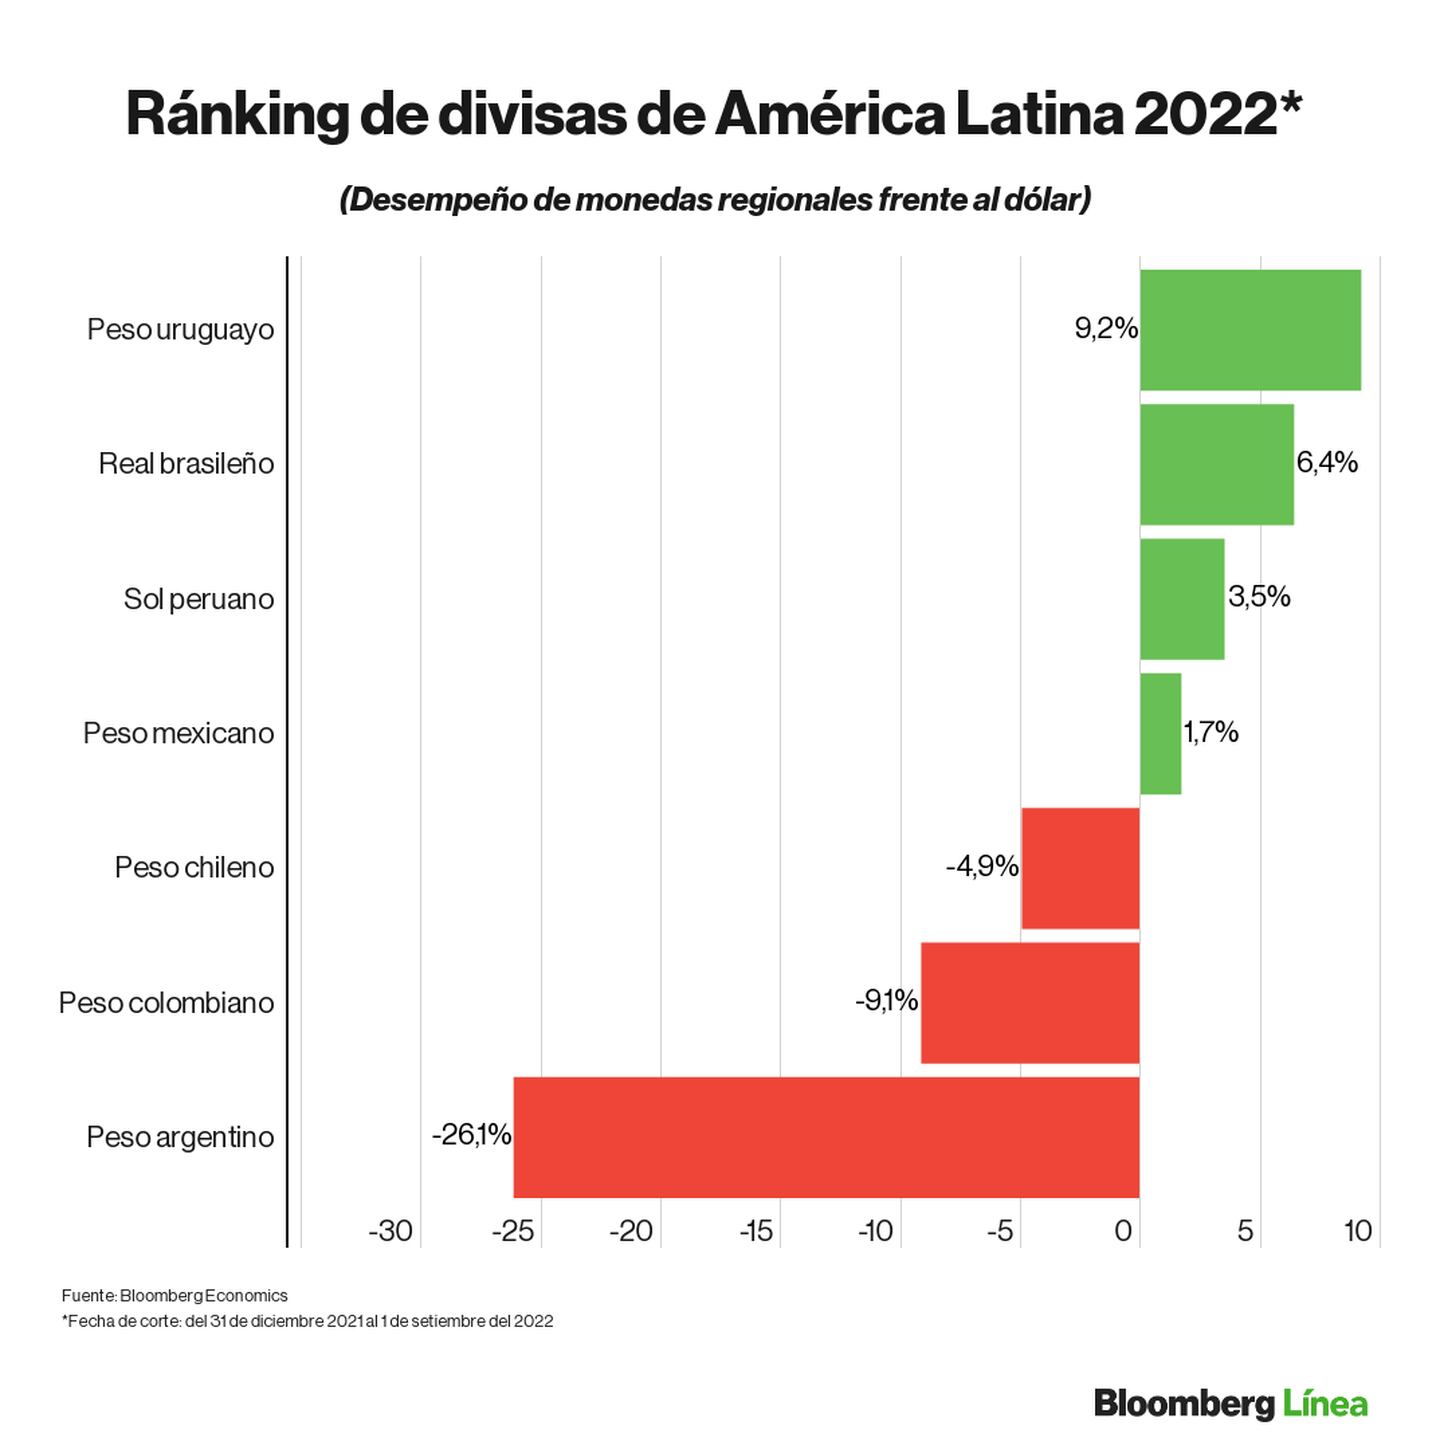 Dólar hoy: Ranking de divisas de mercados emergentes y latinoamericanos en lo que va del 2022.dfd